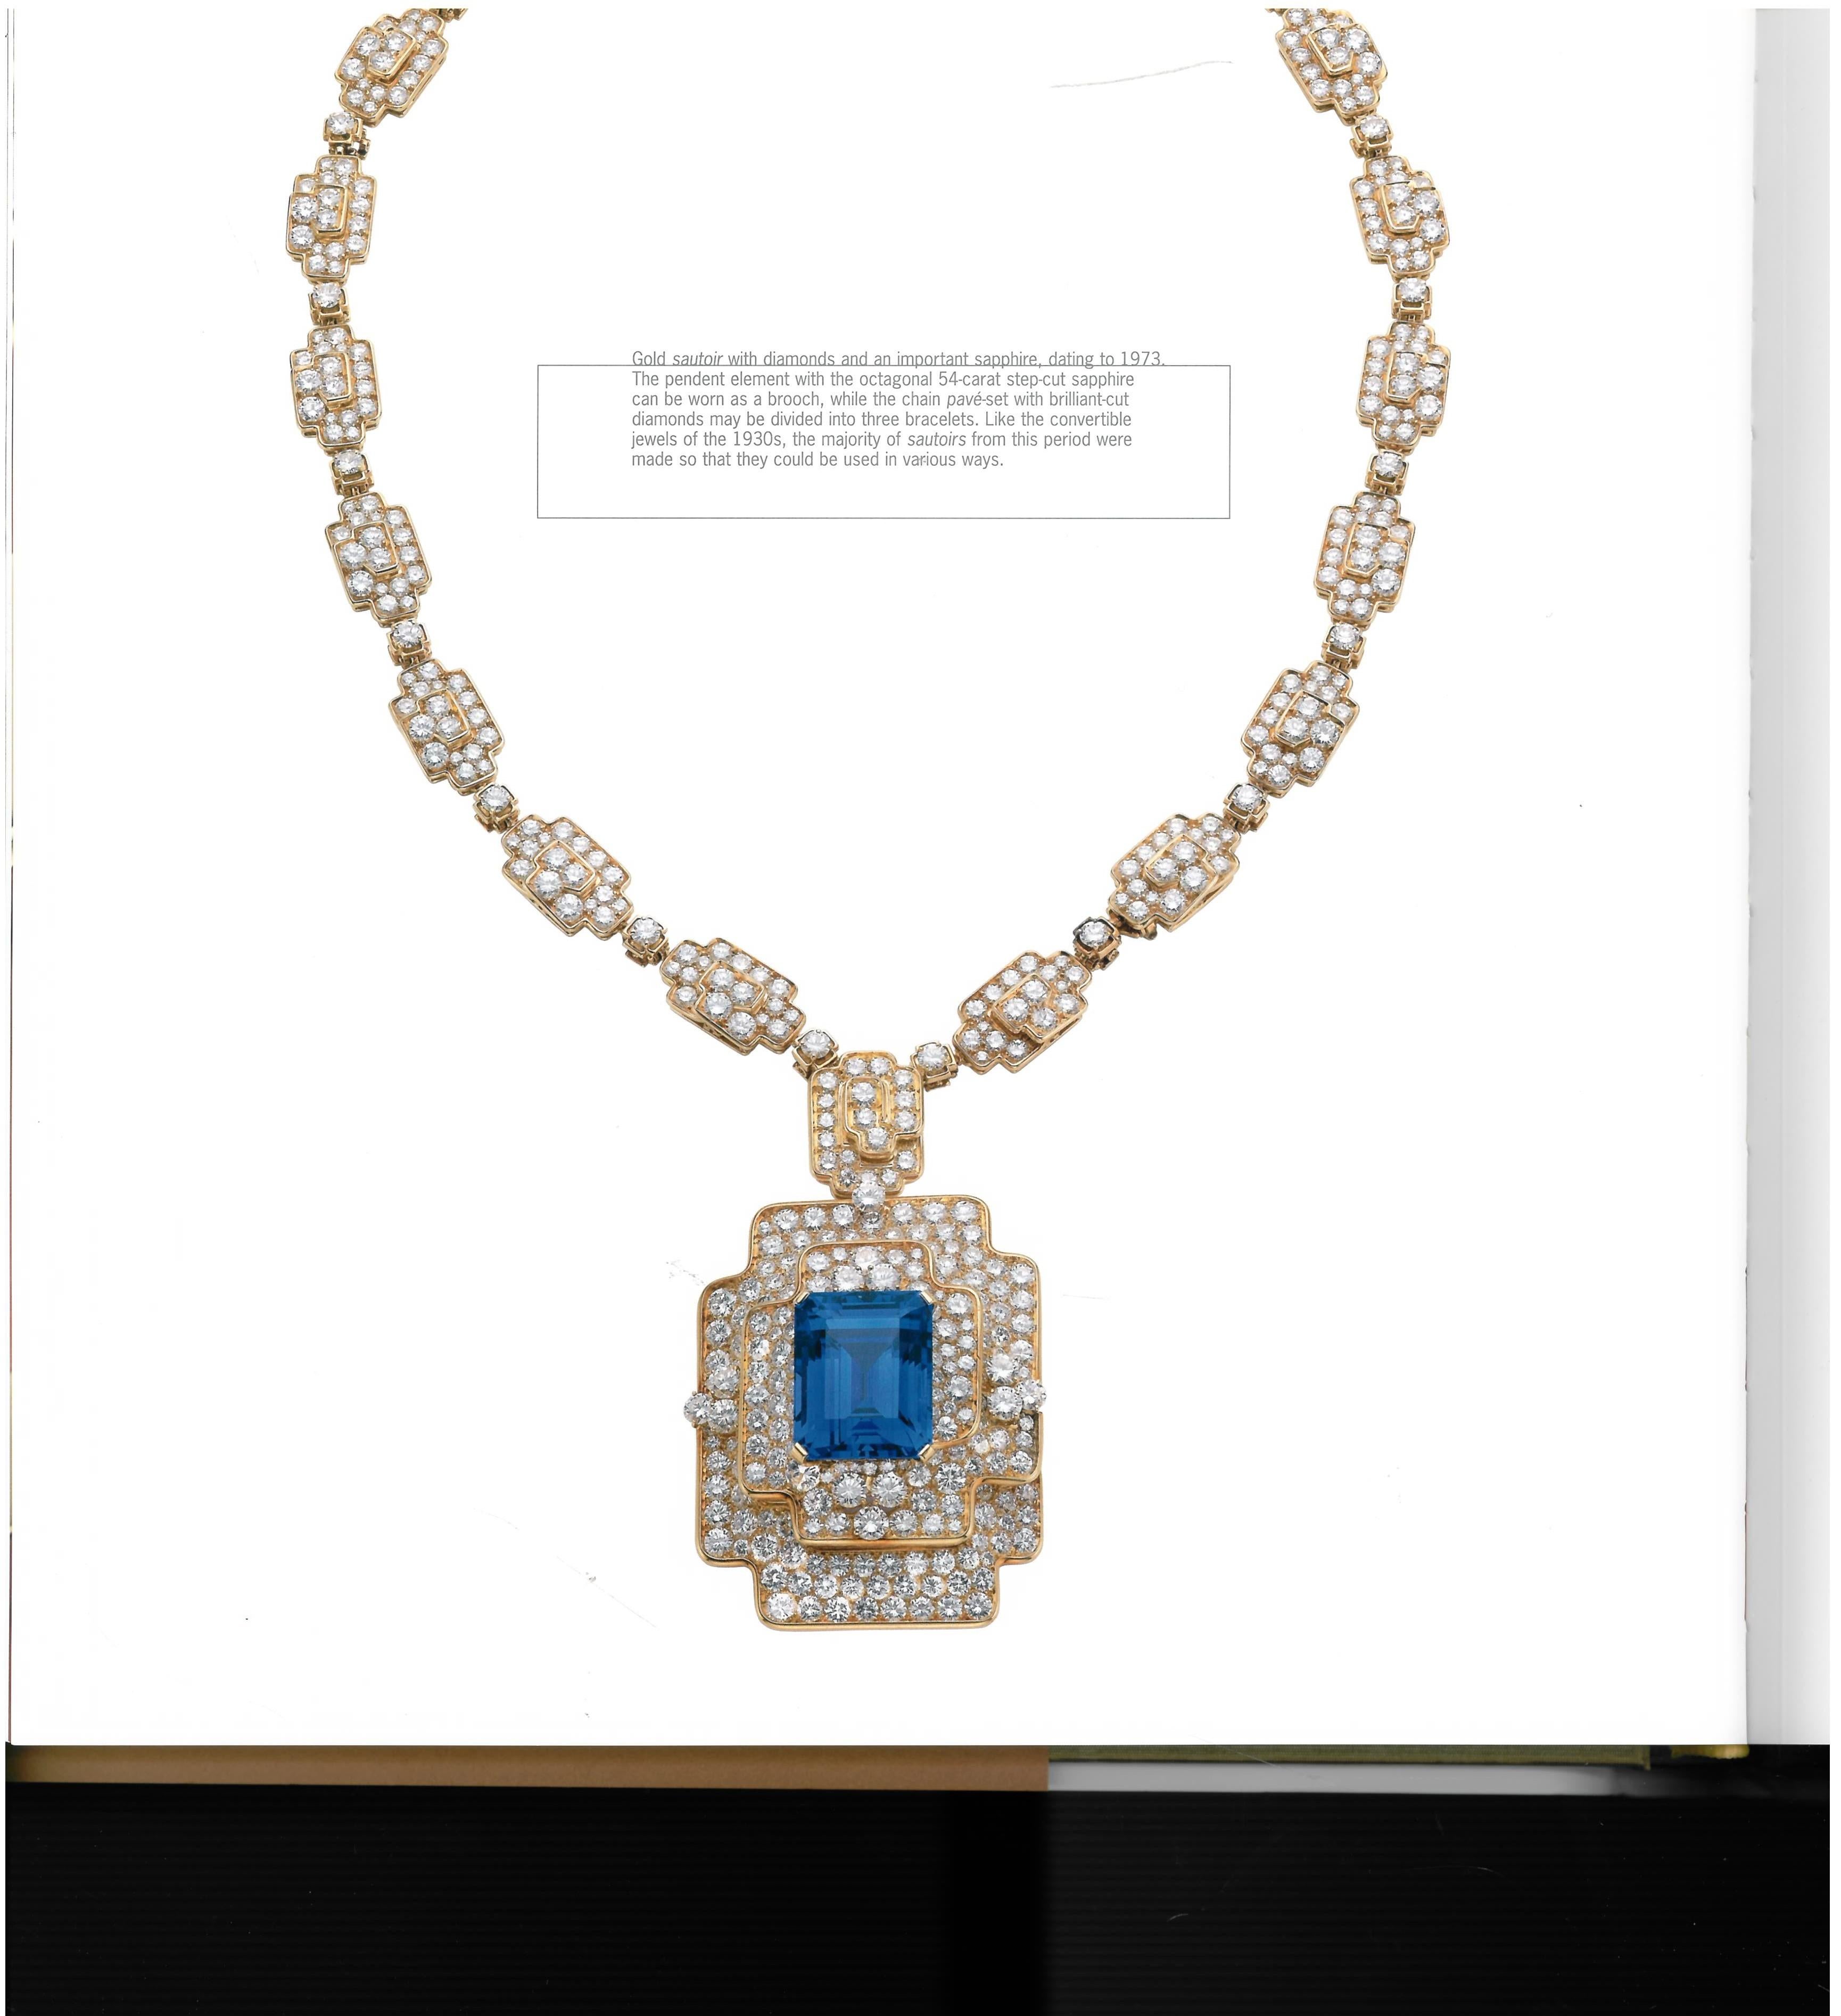 Bulgari, from 1884-2009, 125 Years of Italian Jewels, 'Book' 1